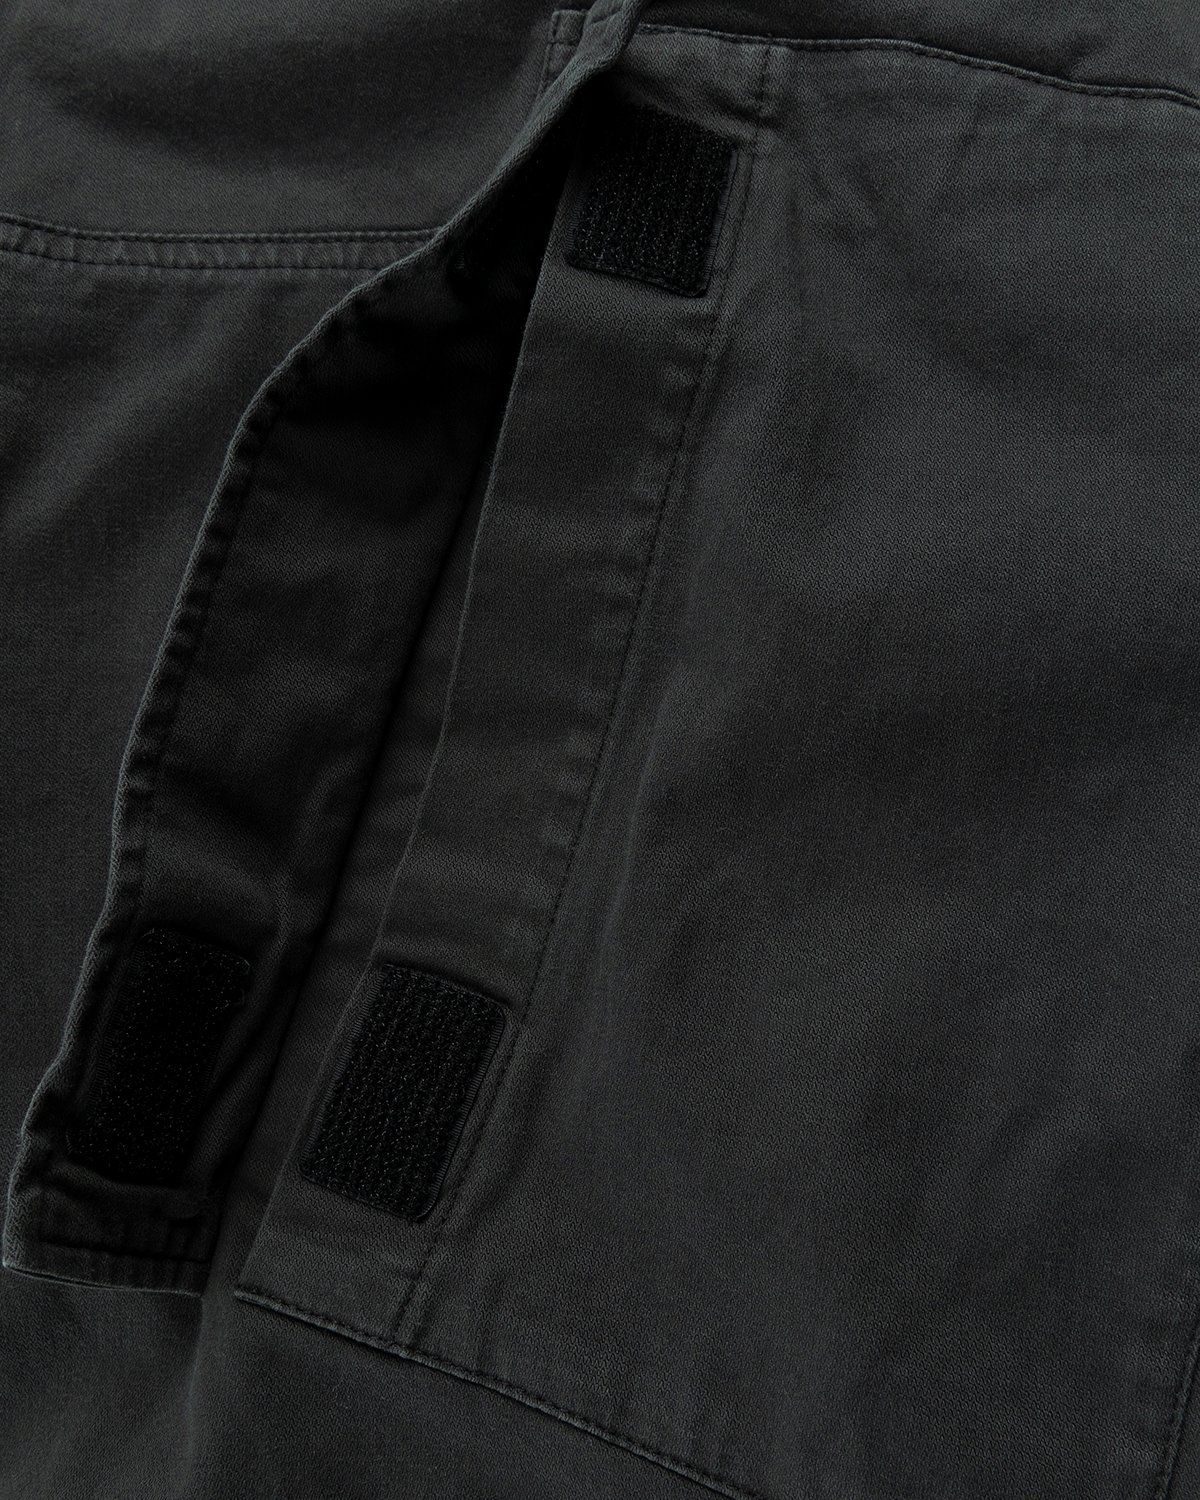 Acne Studios – Chevron Cargo Pants Anthracite Grey - Pants - Grey - Image 5